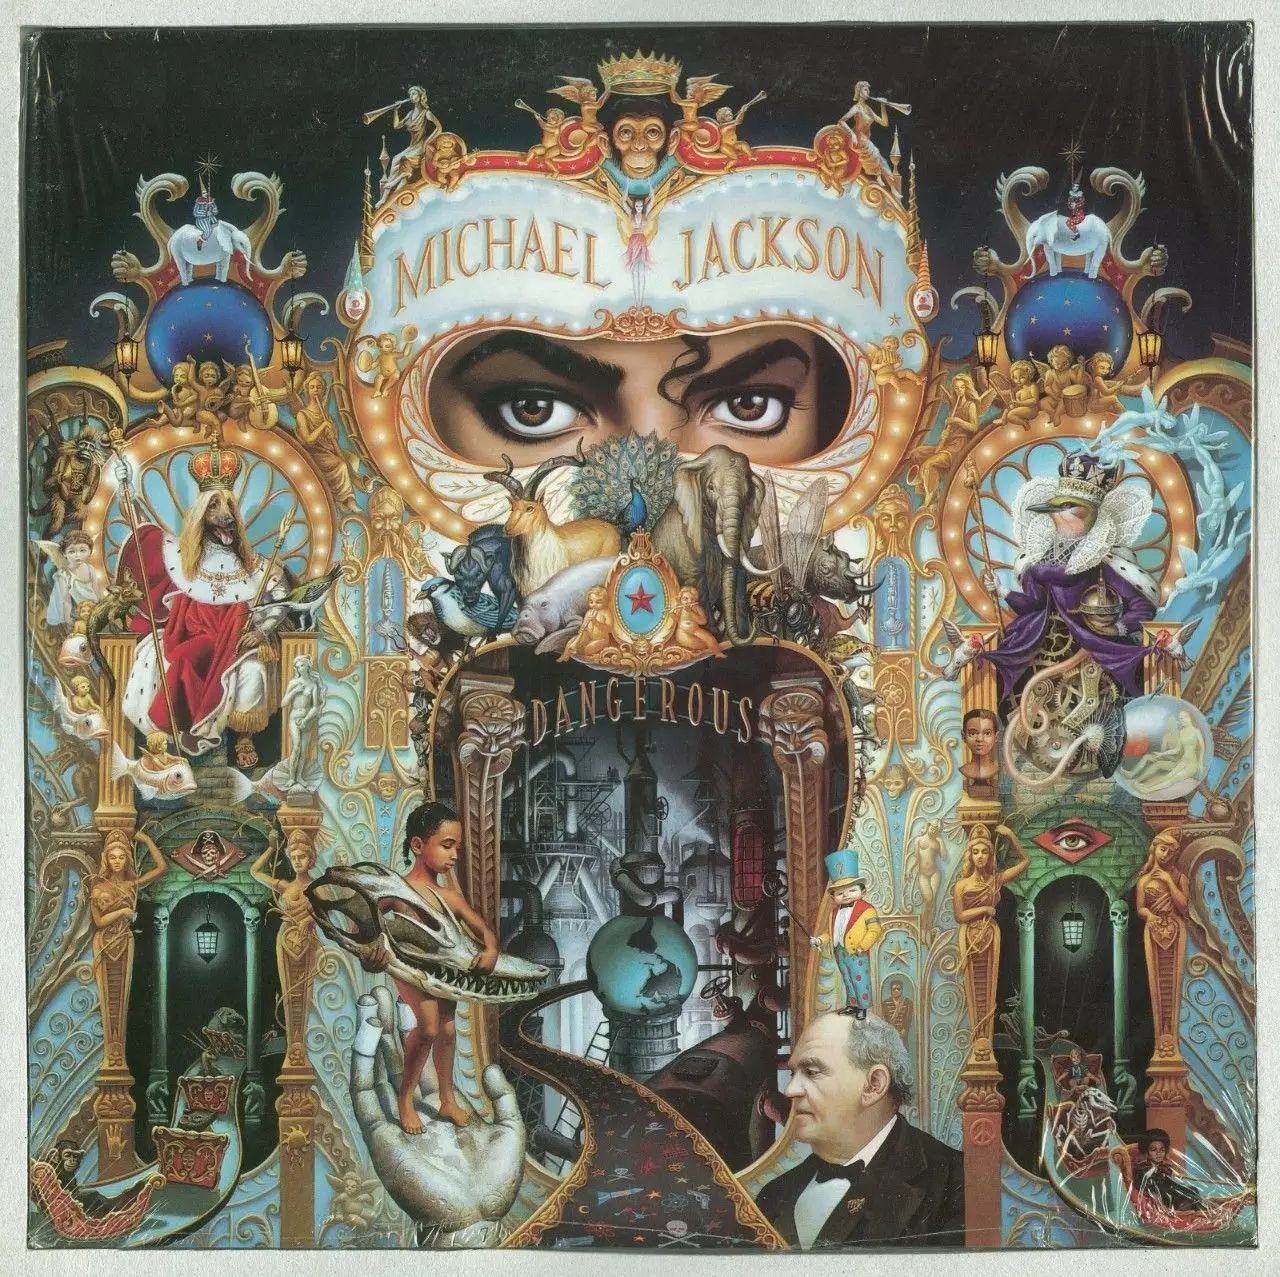 迈克尔杰克逊《Dangerous》专辑全碟欣赏!